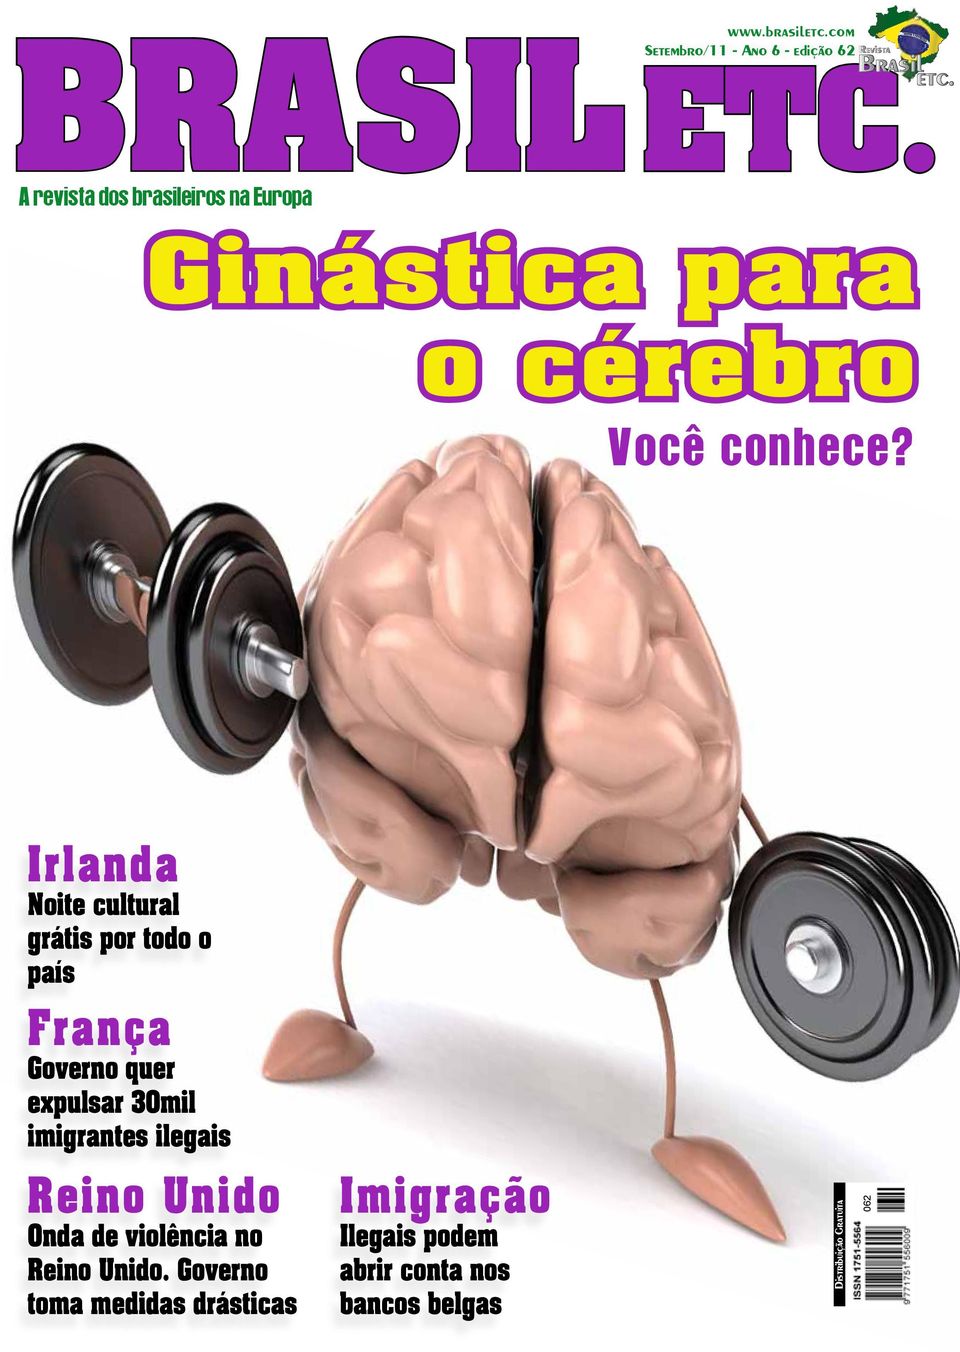 com + 44 (0)1525 403 845 A revista dos brasileiros na Europa ORDEM E PROGRESSO A maior revista para brasileiros na Europa